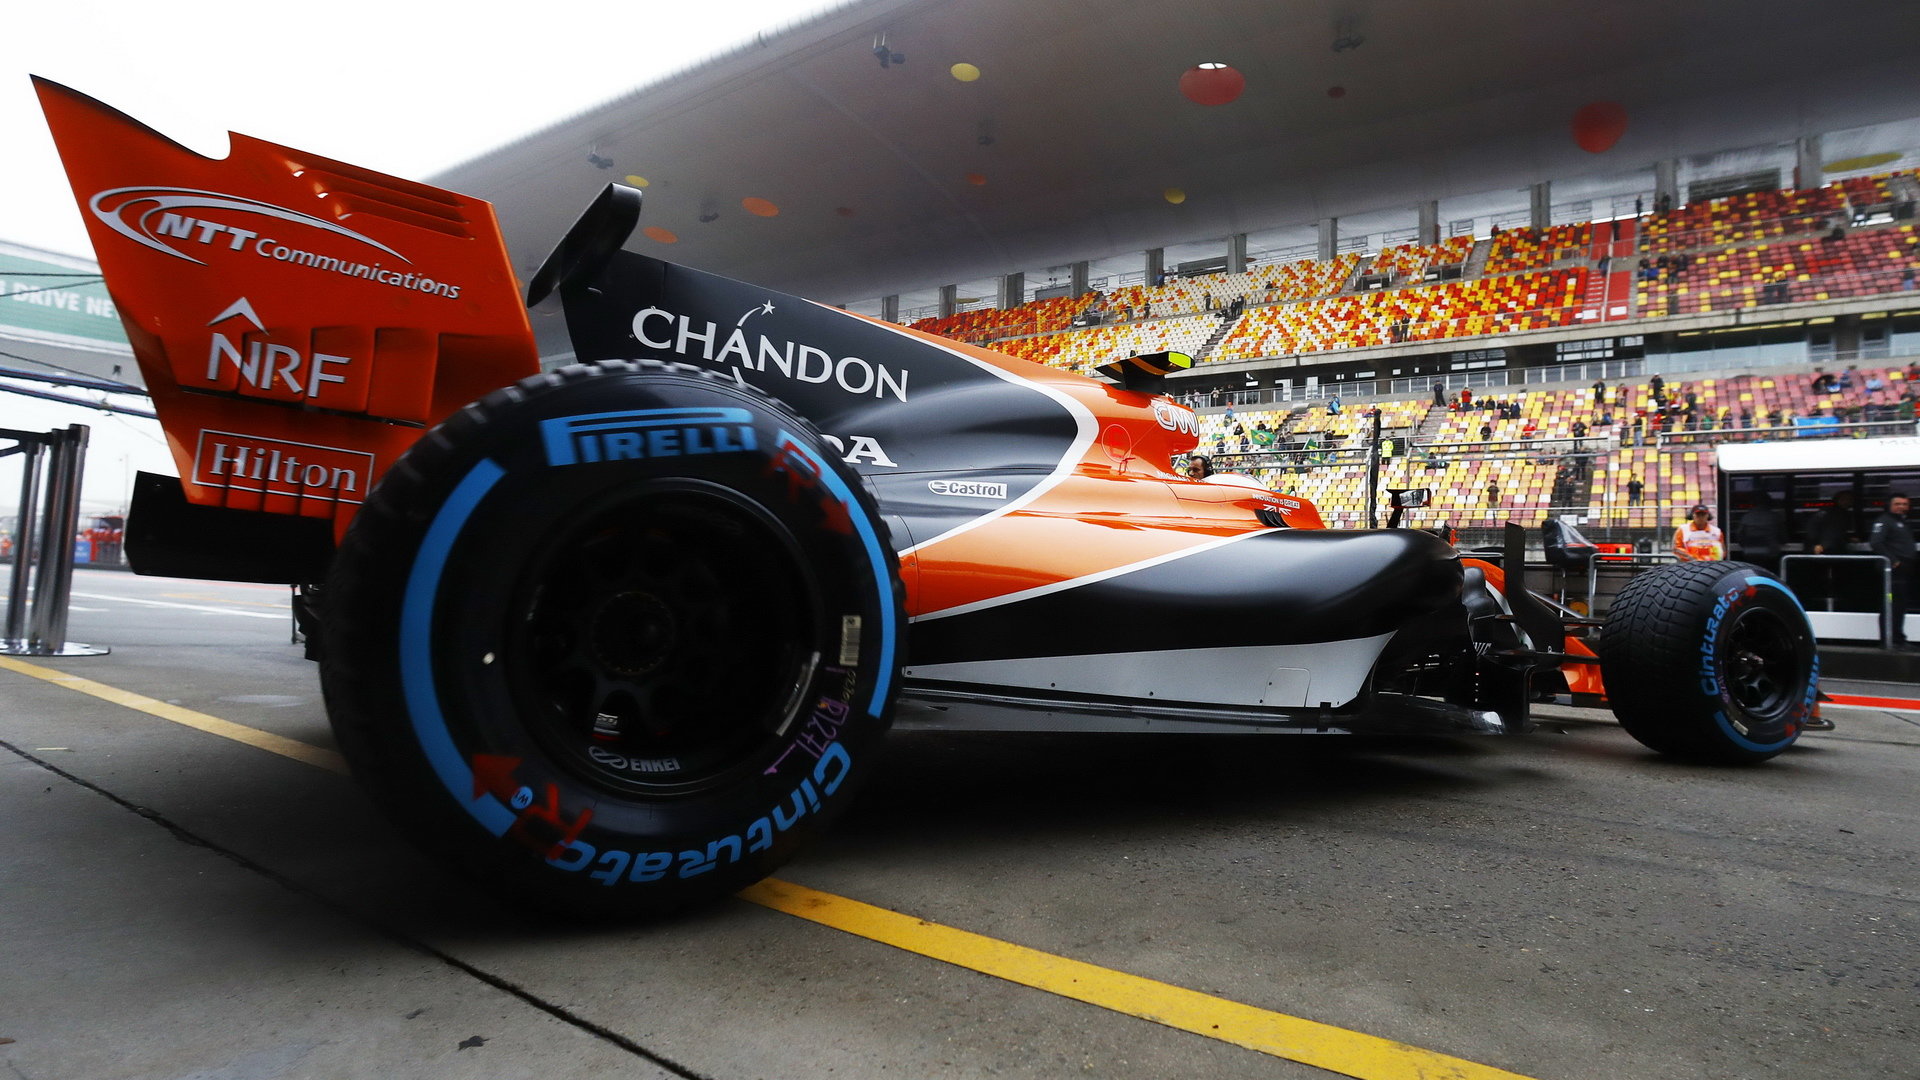 Stoffel Vandoorne s McLarenem v Číně